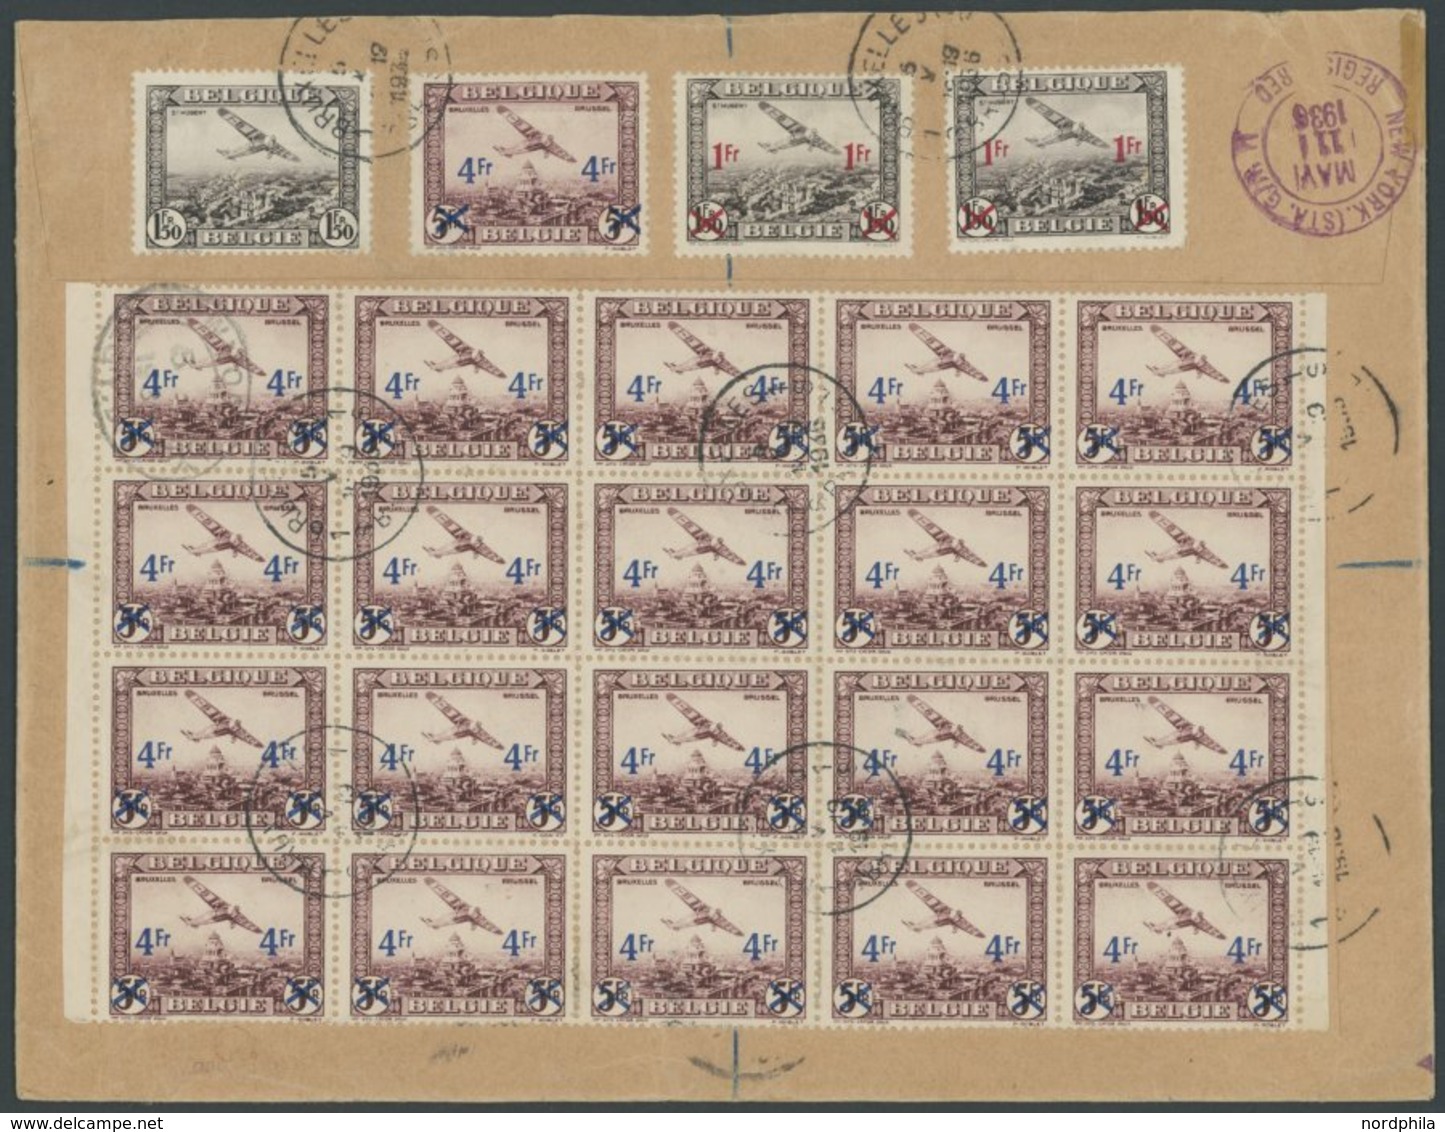 Belgien: 1936, 1. Nordamerikafahrt, Auflieferung Frankfurt (d), Einschreibbrief Mit 24 Aufdruckmarken, U.a. Im 20er-Boge - Poste Aérienne & Zeppelin